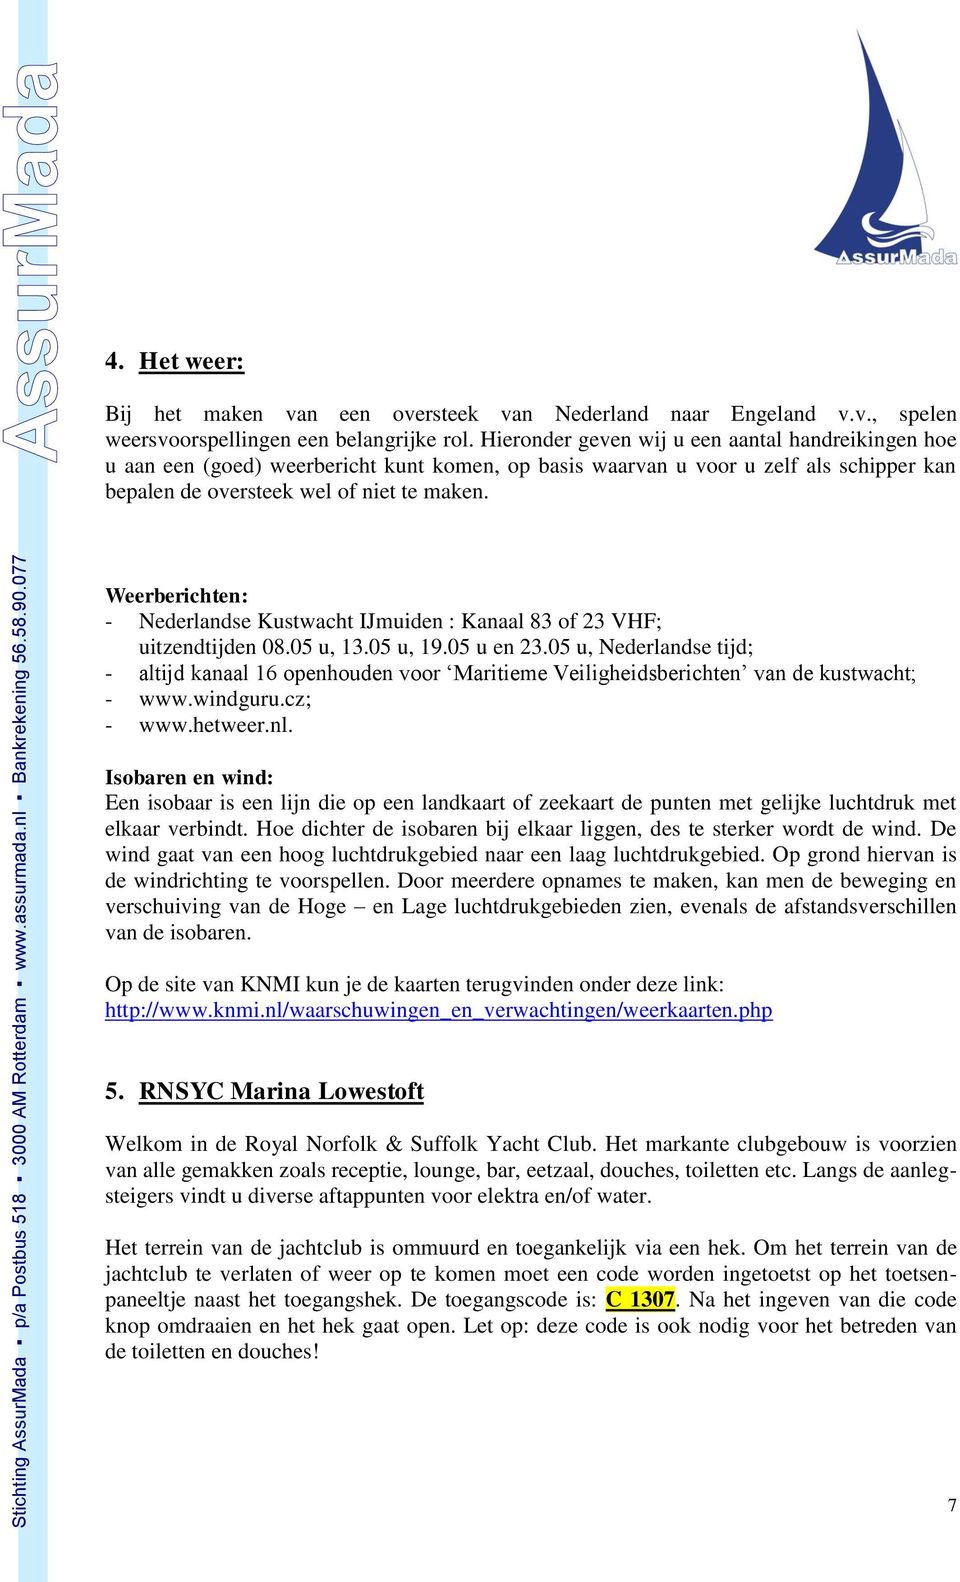 Weerberichten: - Nederlandse Kustwacht IJmuiden : Kanaal 83 of 23 VHF; uitzendtijden 08.05 u, 13.05 u, 19.05 u en 23.